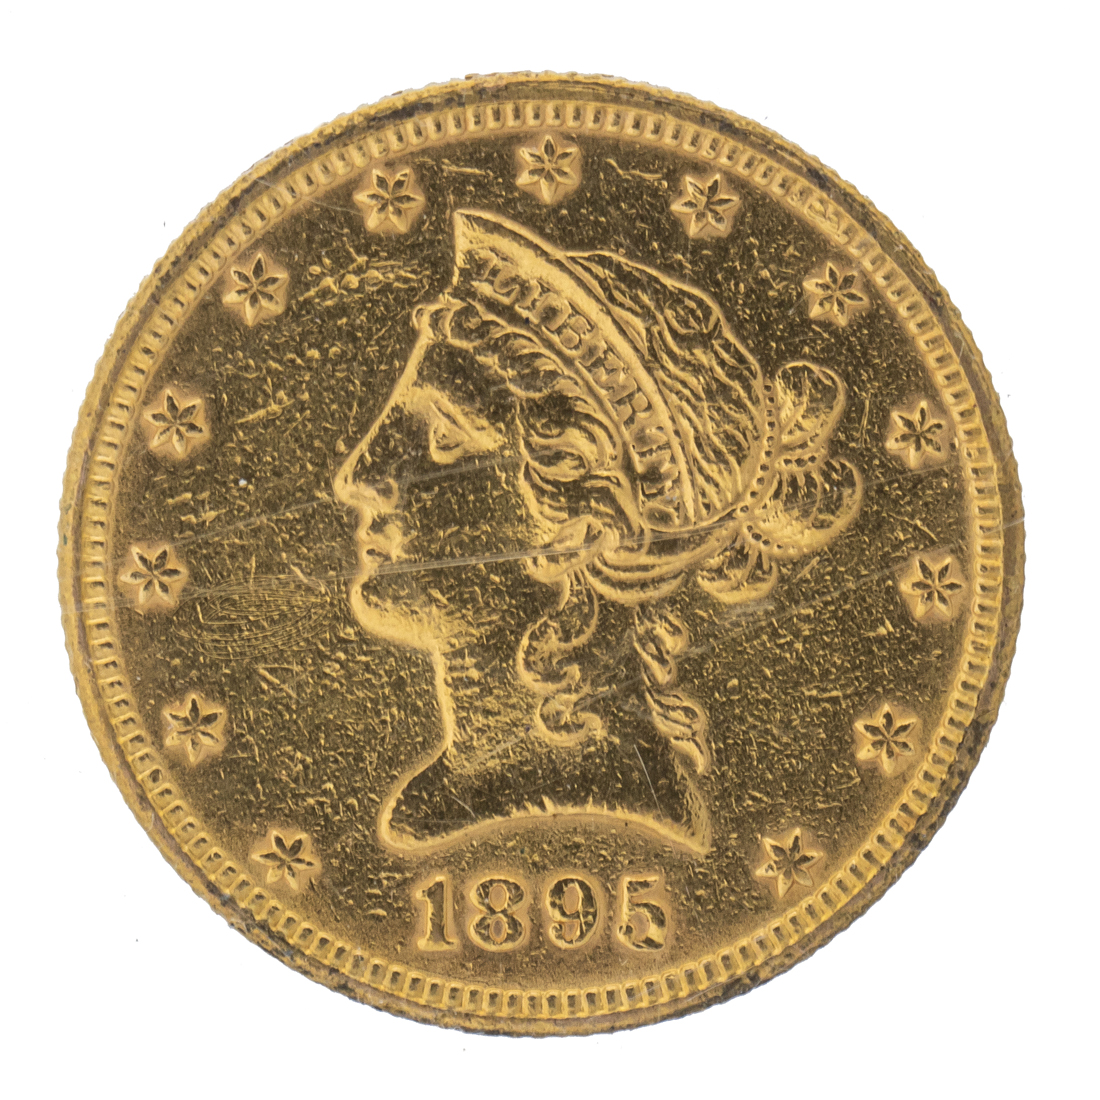  10 GOLD EAGLE LIBERTY HEAD 1895 2d2165